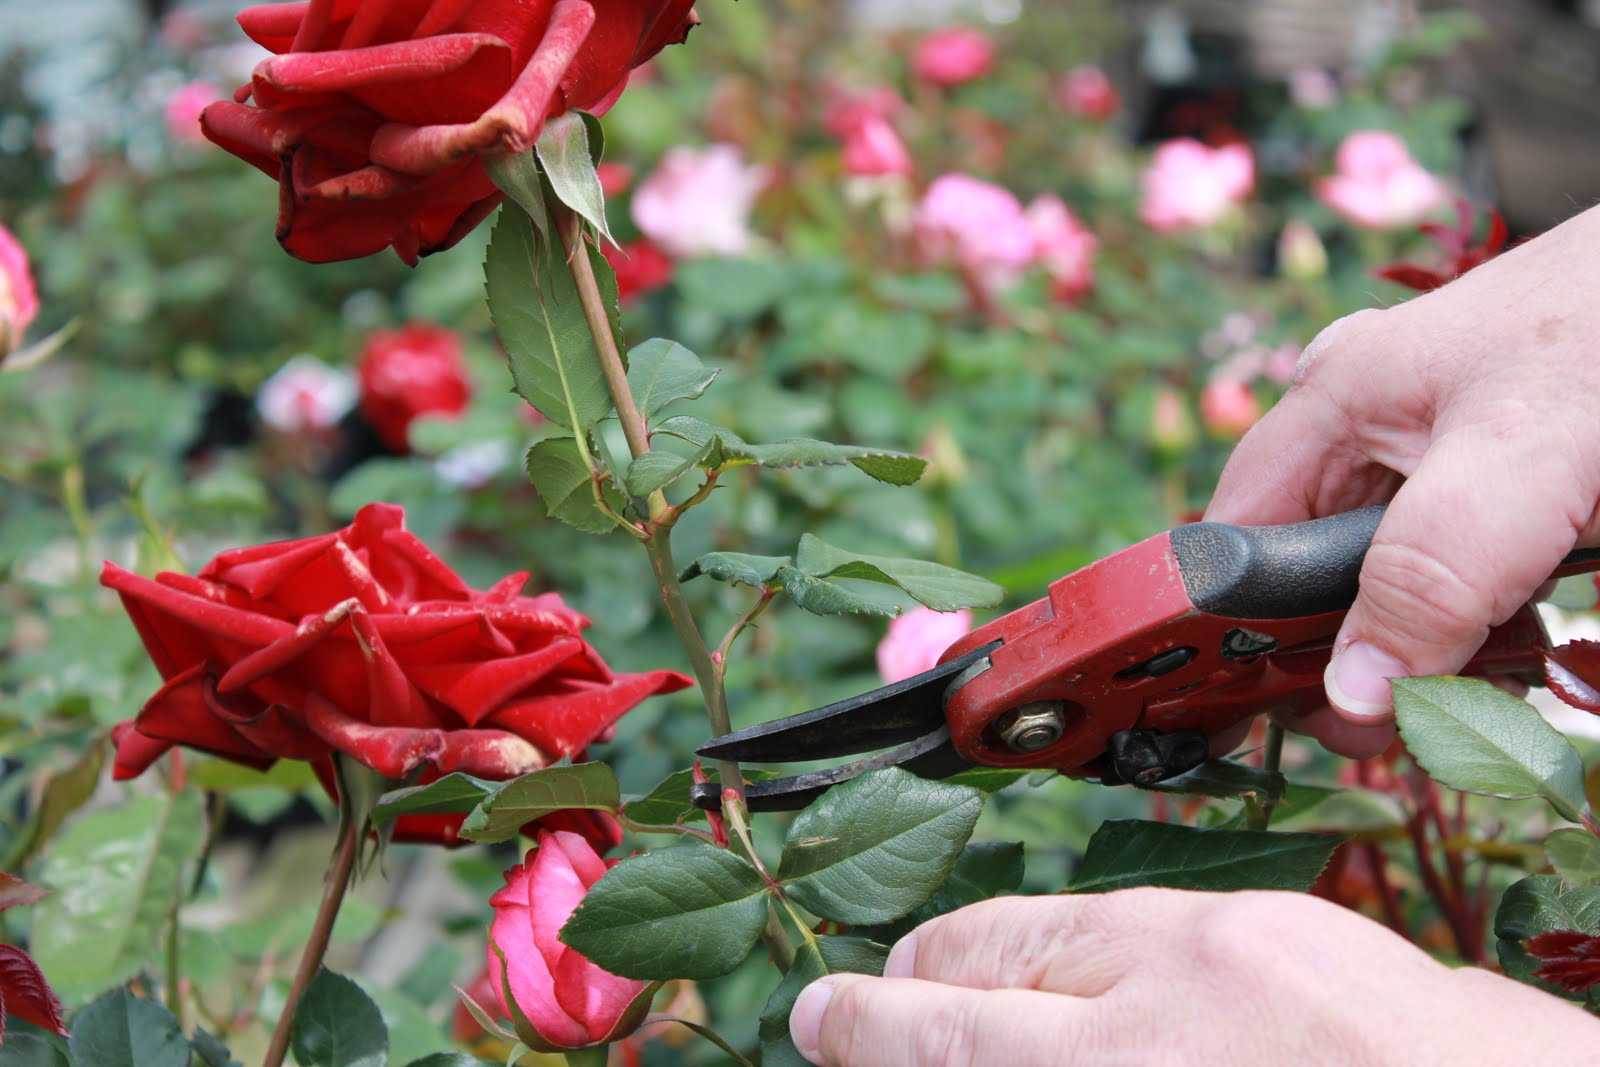 Как вырастить розы в своем саду - краткая энциклопедия (170 фото)